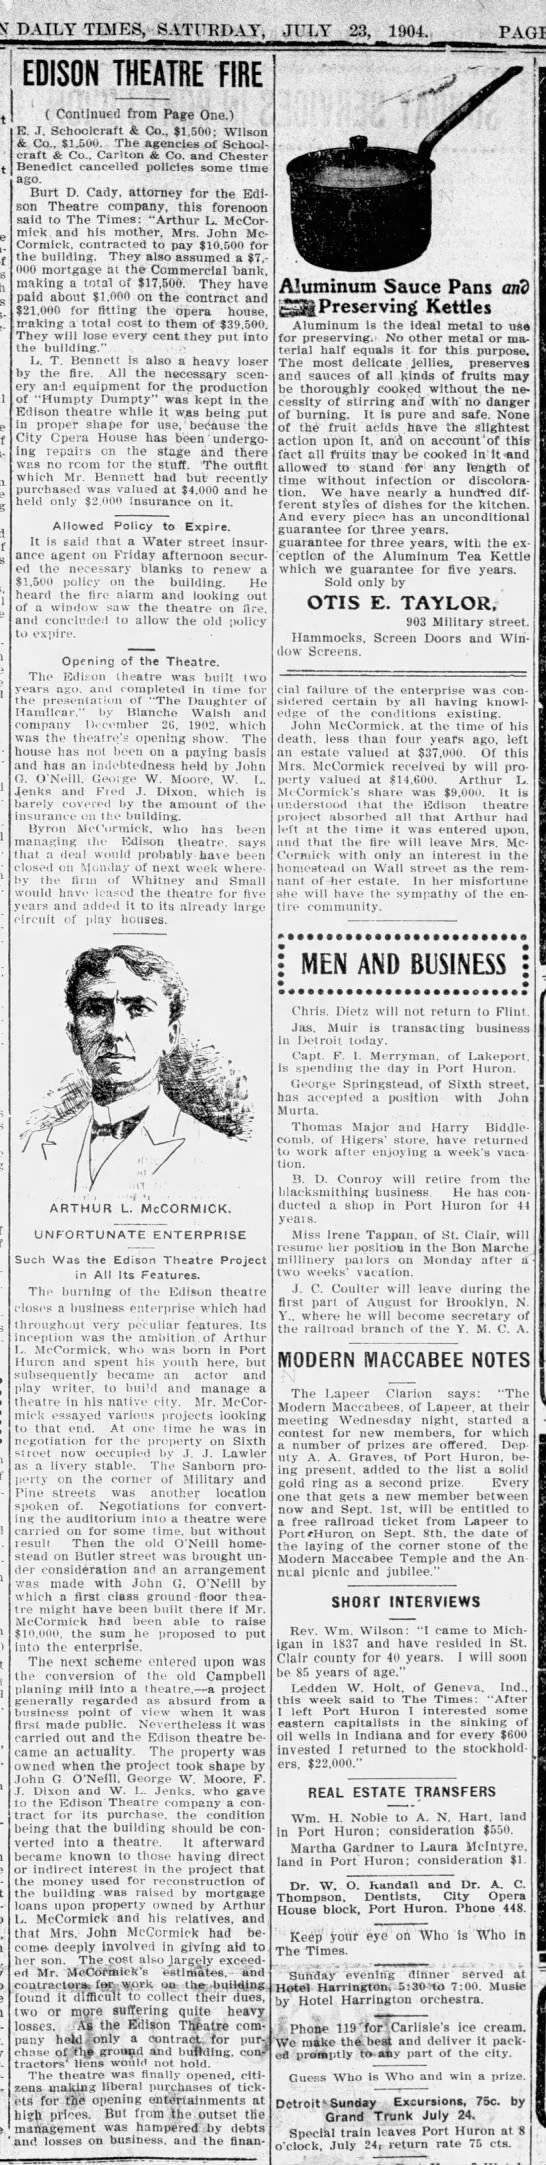 Edison Theatre - Article On Fire 1904